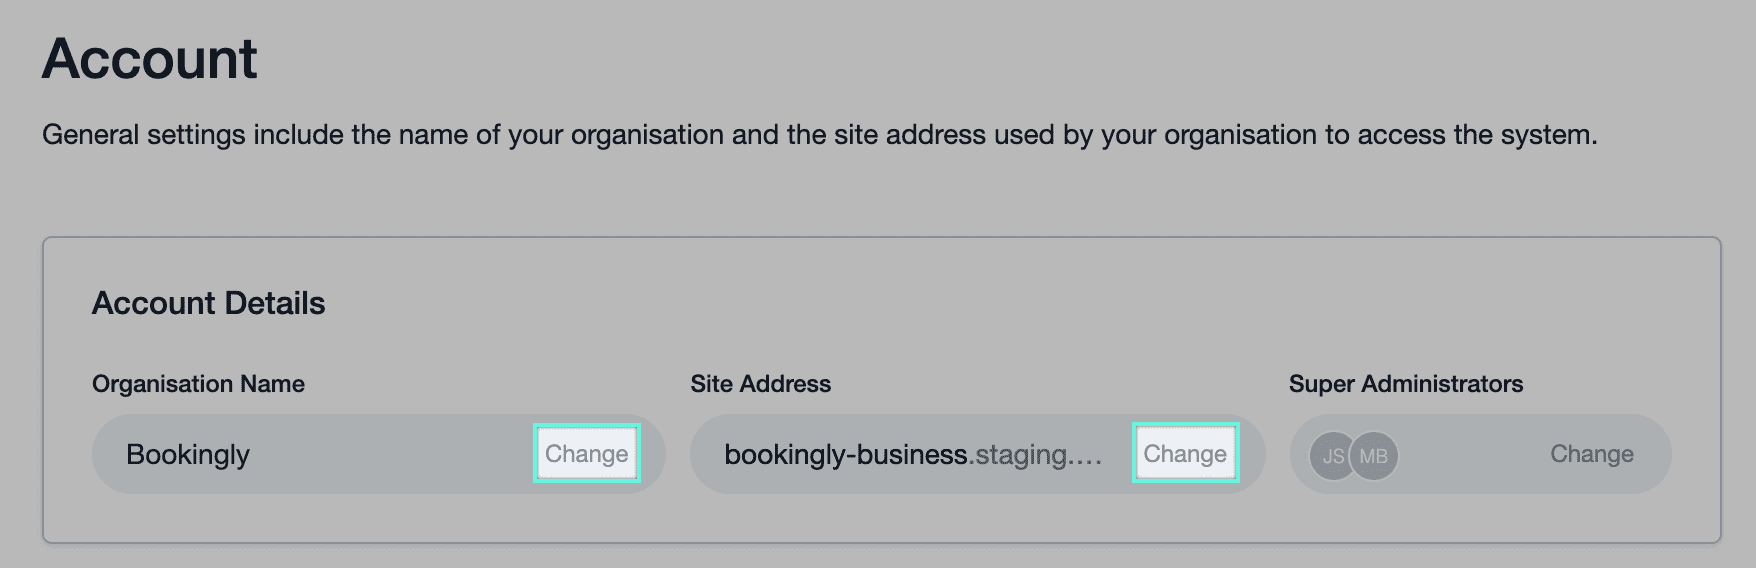 Link do nome da organização e do endereço do site com botões de “alterar” ao lado de cada um, que permitem ao usuário atualizar